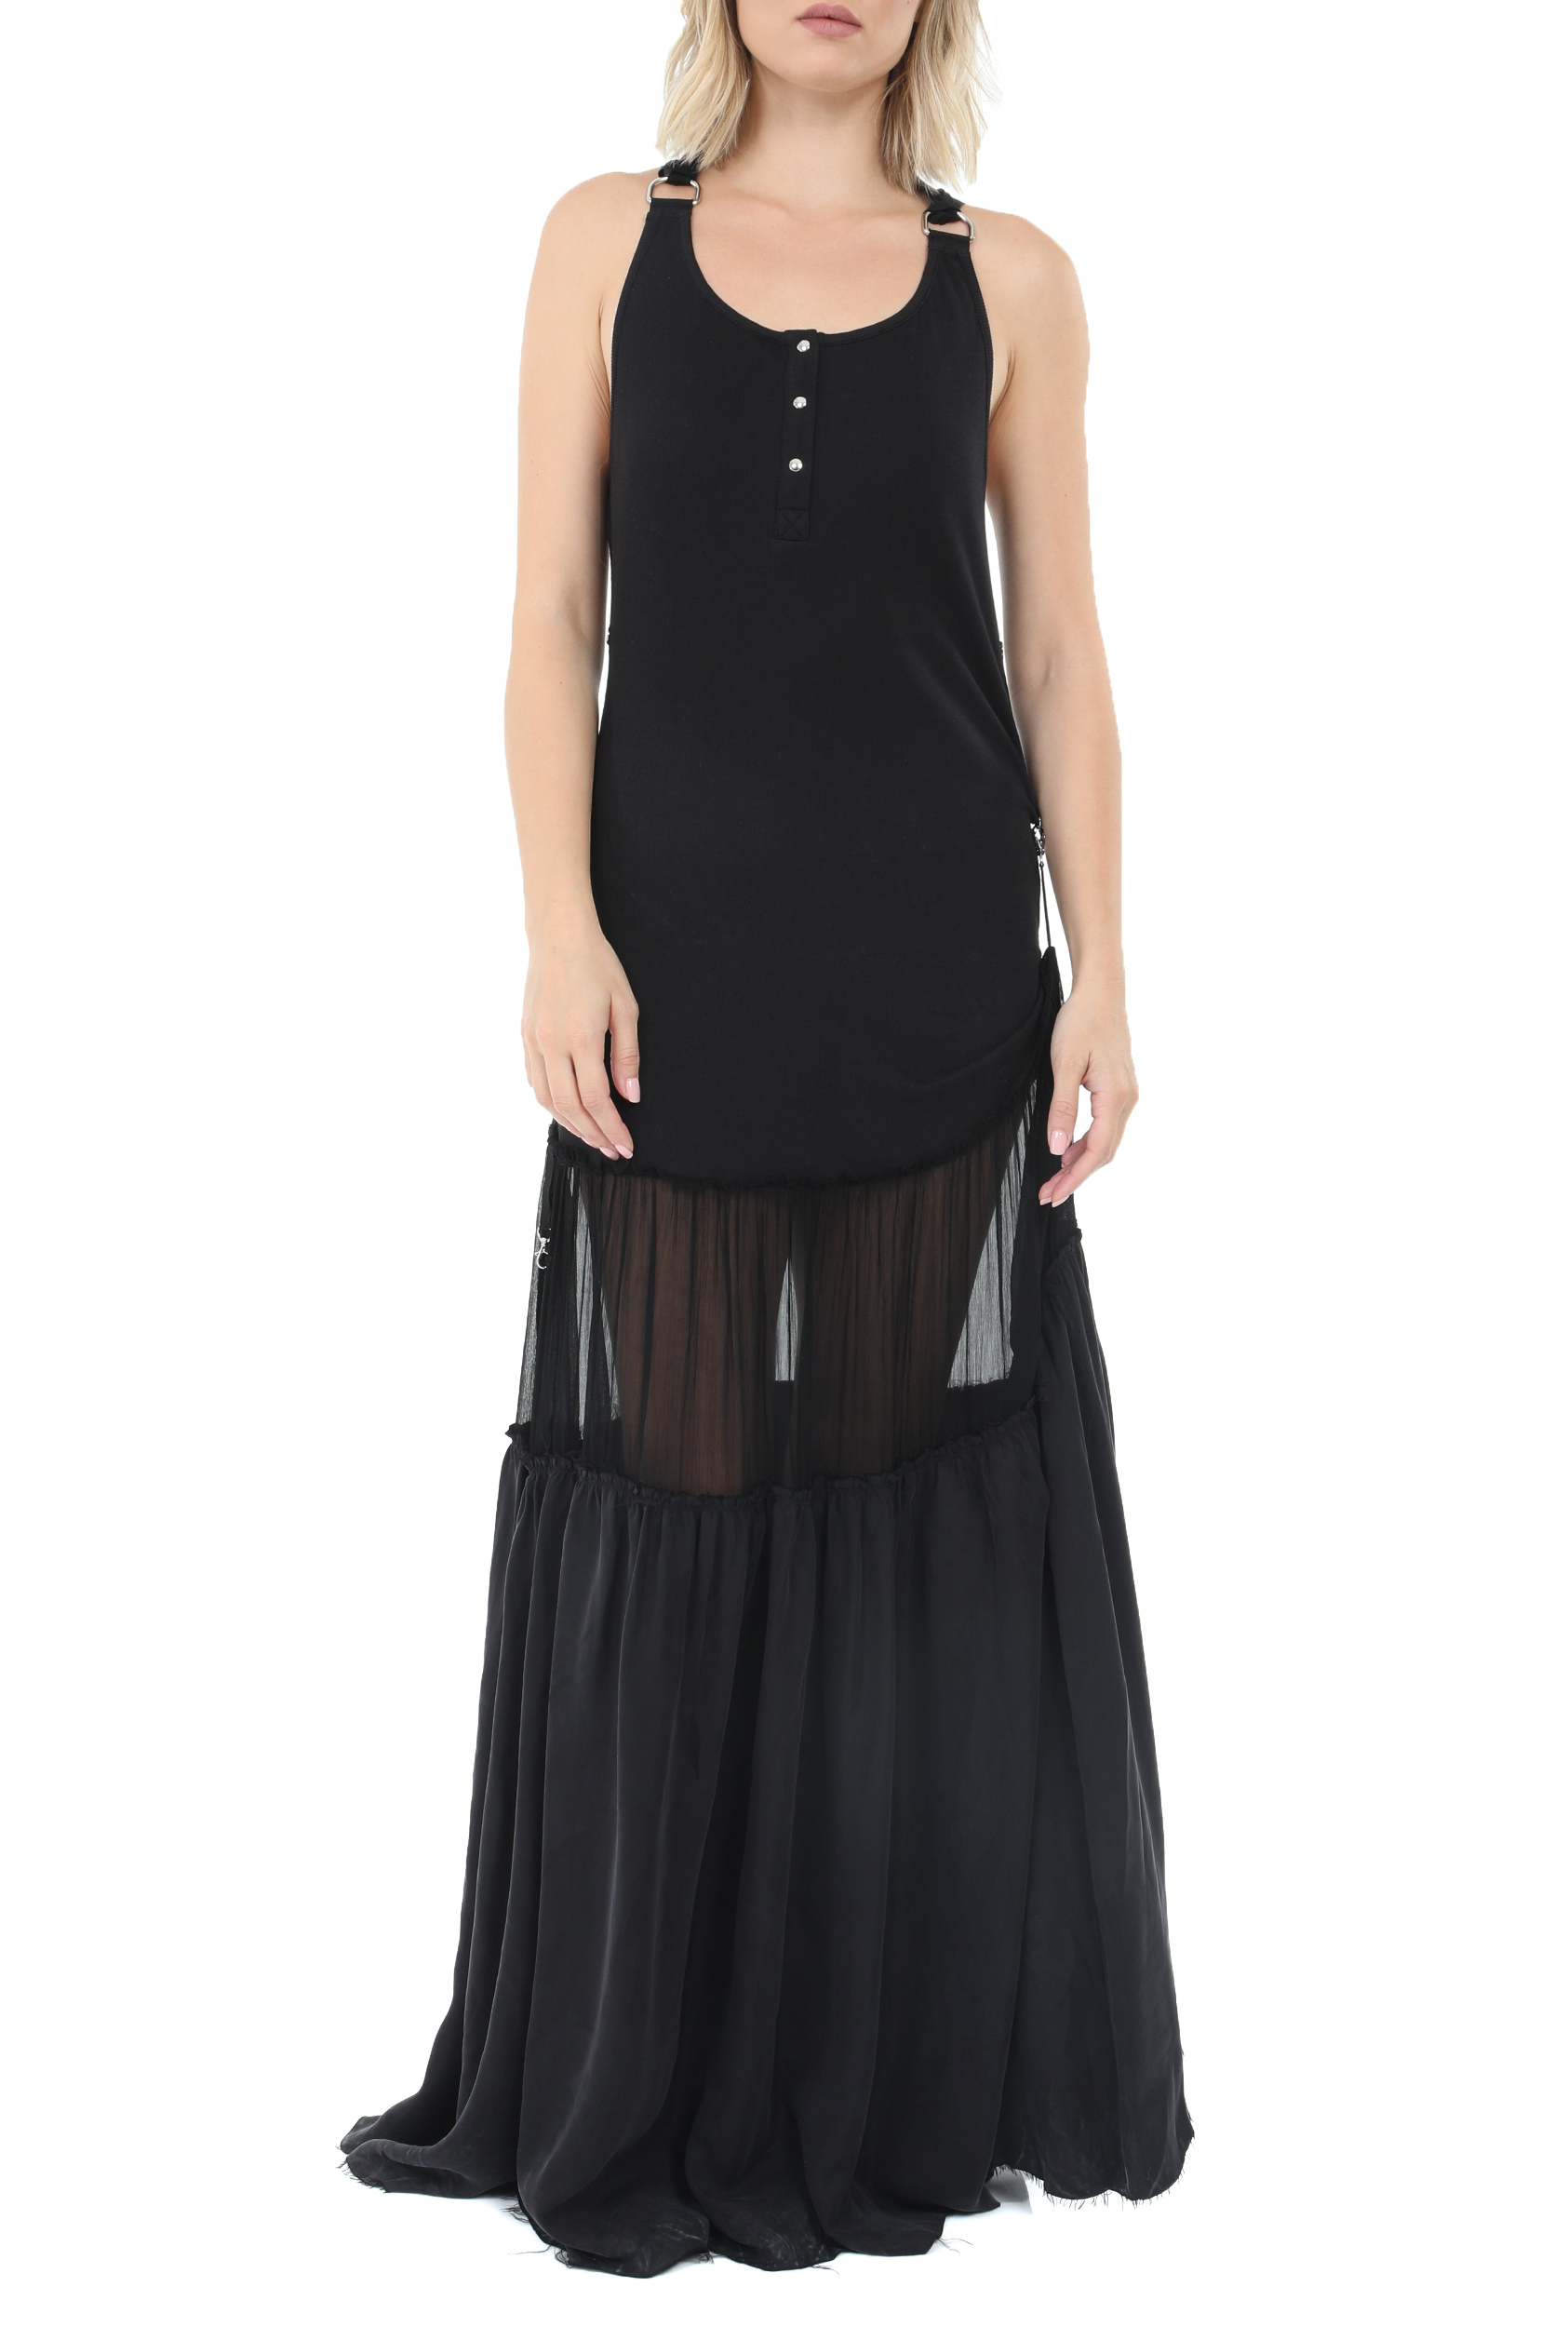 Γυναικεία/Ρούχα/Φορέματα/Μάξι DIESEL - Γυναικείο μακρύ φόρεμα DIESEL D-SAIGE μαύρο